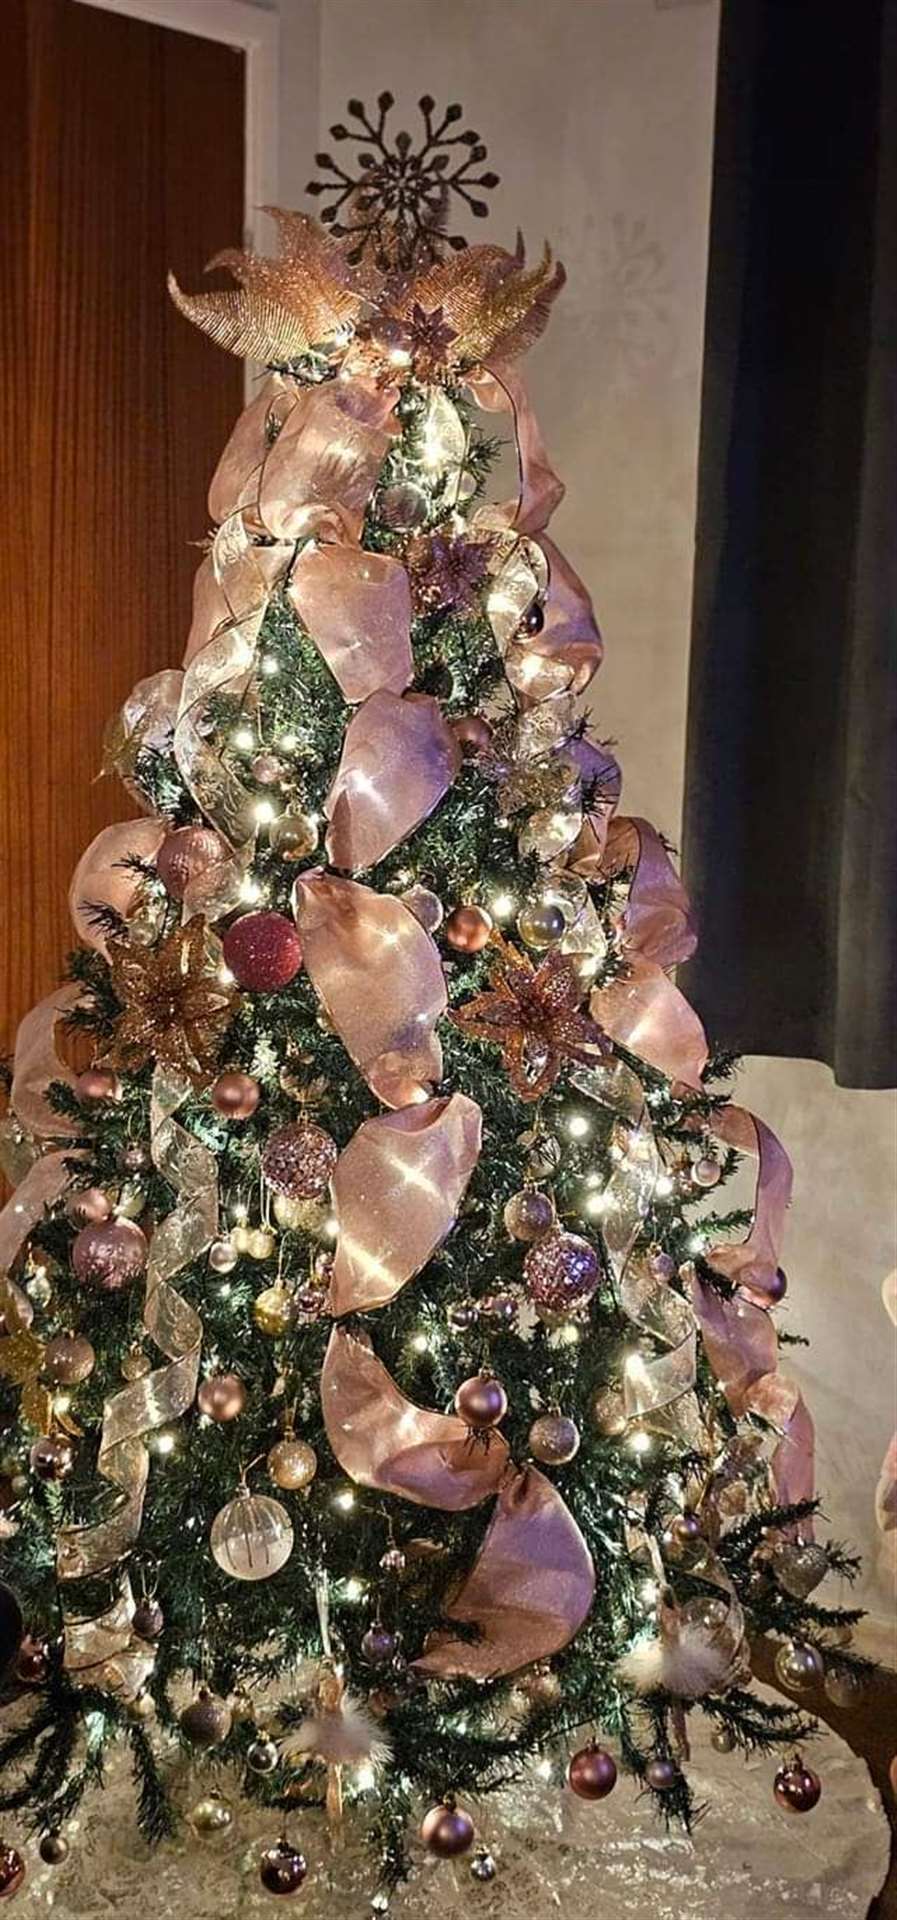 Sandie Hawkes' Christmas tree.